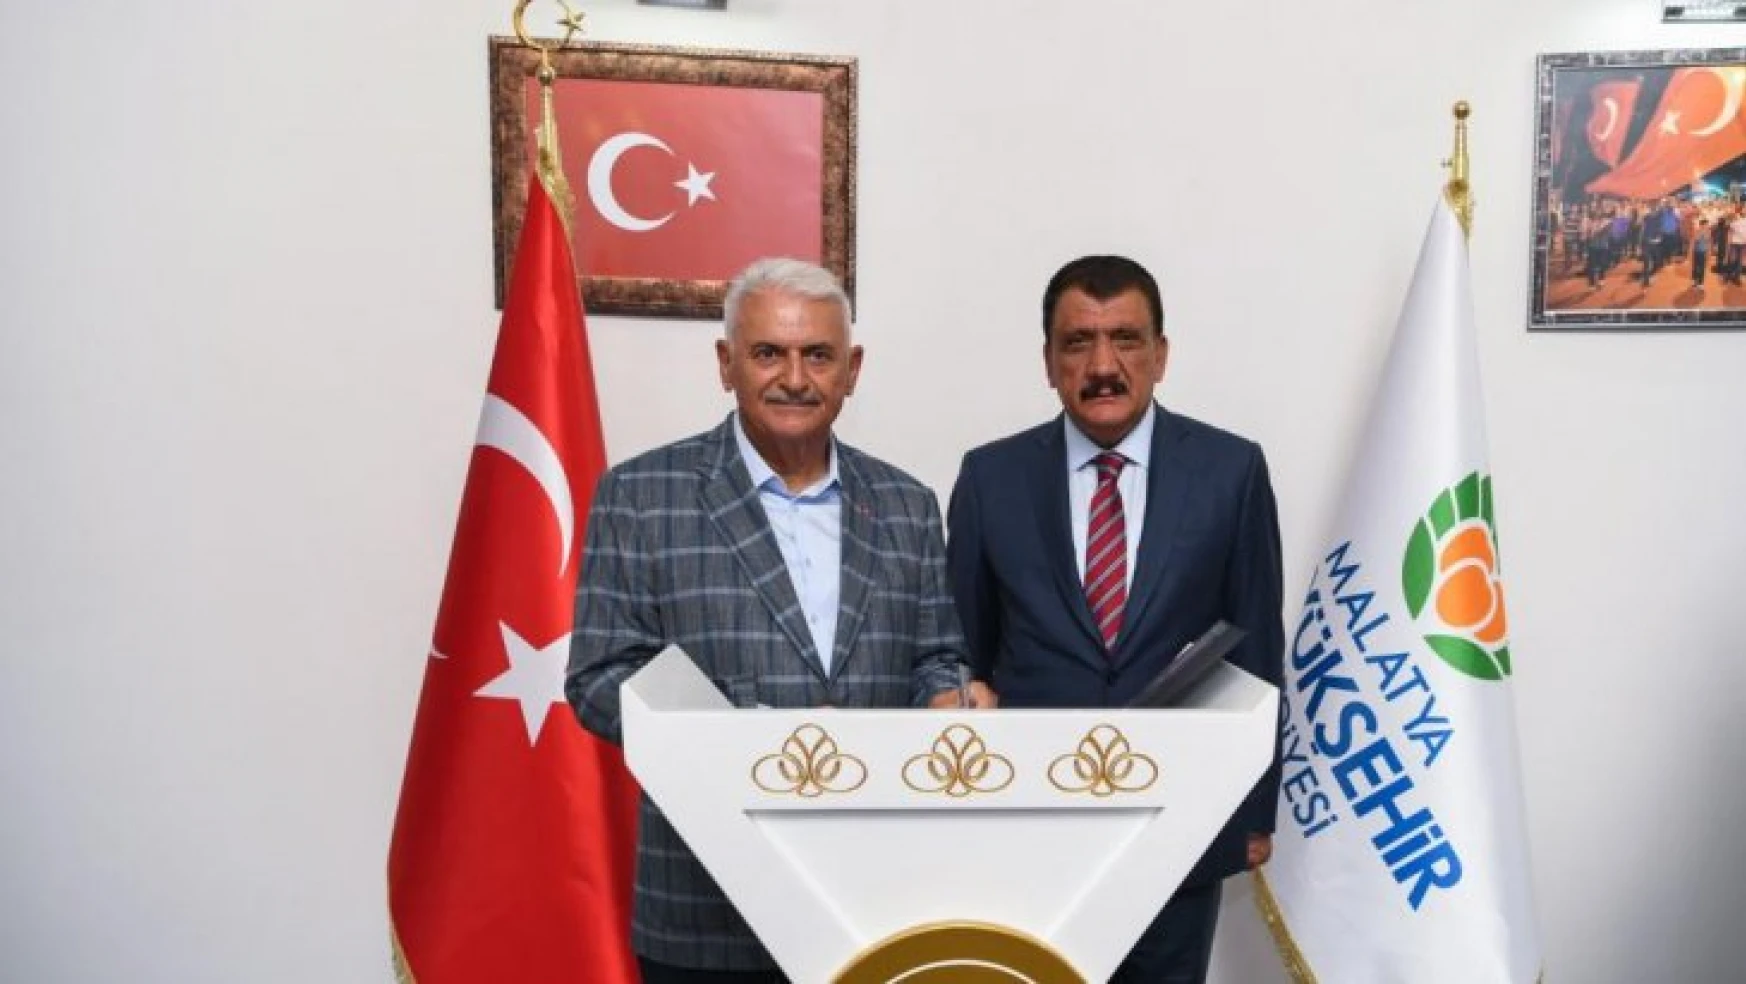 AK Parti Genel Başkan Vekili Binali Yıldırım, Büyükşehir Belediyesini ziyaret etti